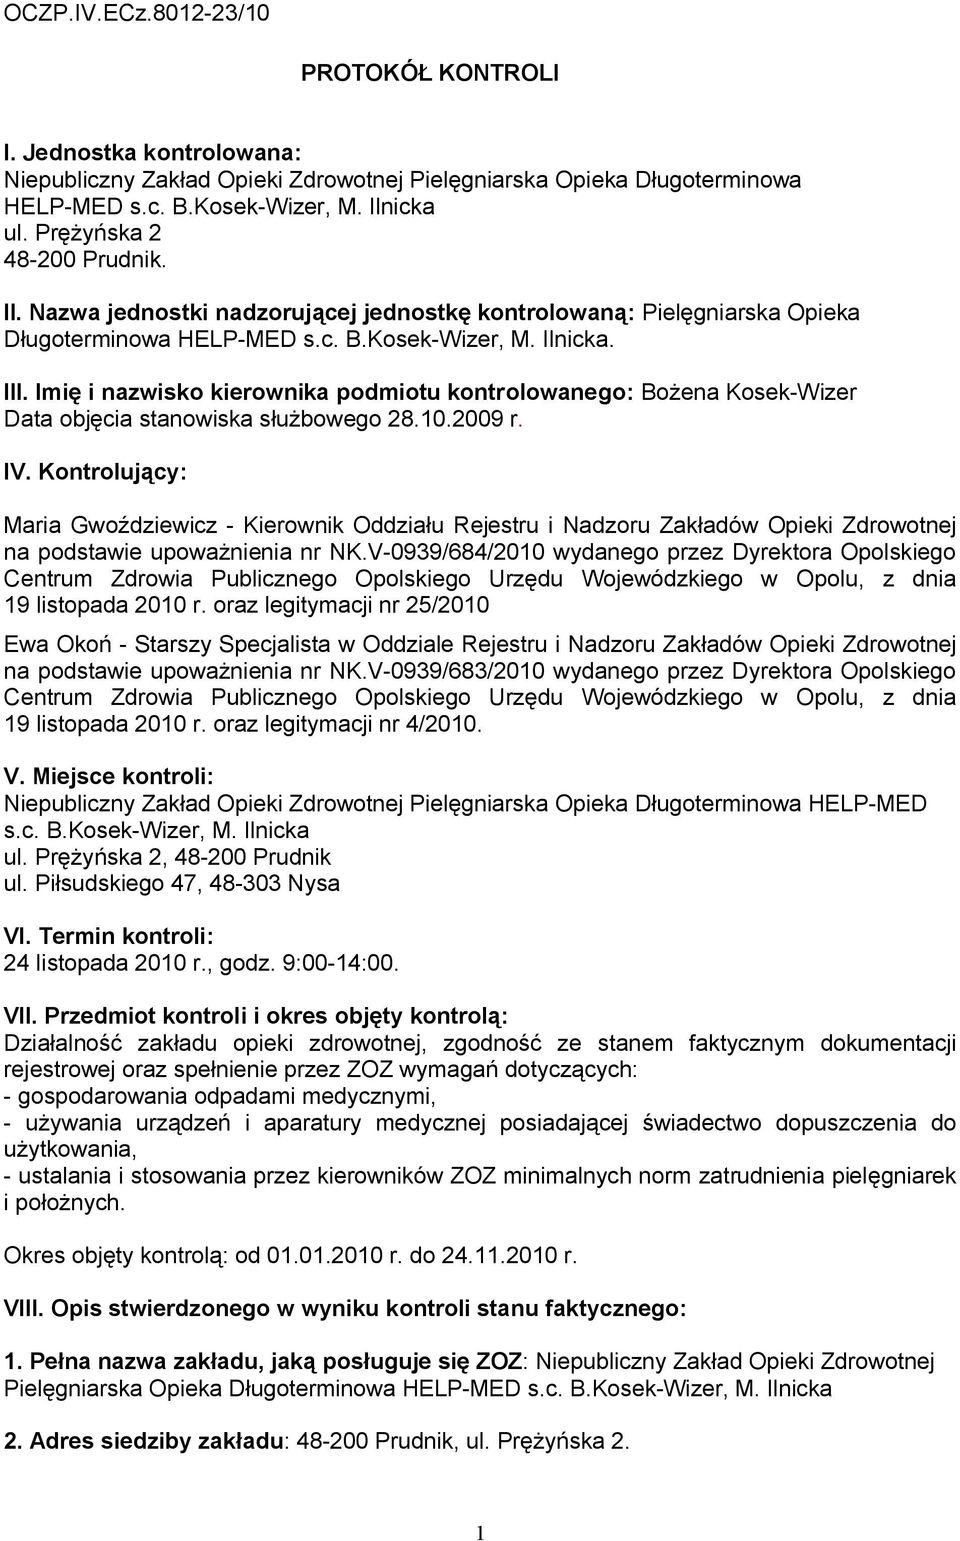 Imię i nazwisko kierownika podmiotu kontrolowanego: Bożena Kosek-Wizer Data objęcia stanowiska służbowego 28.10.2009 r. IV.